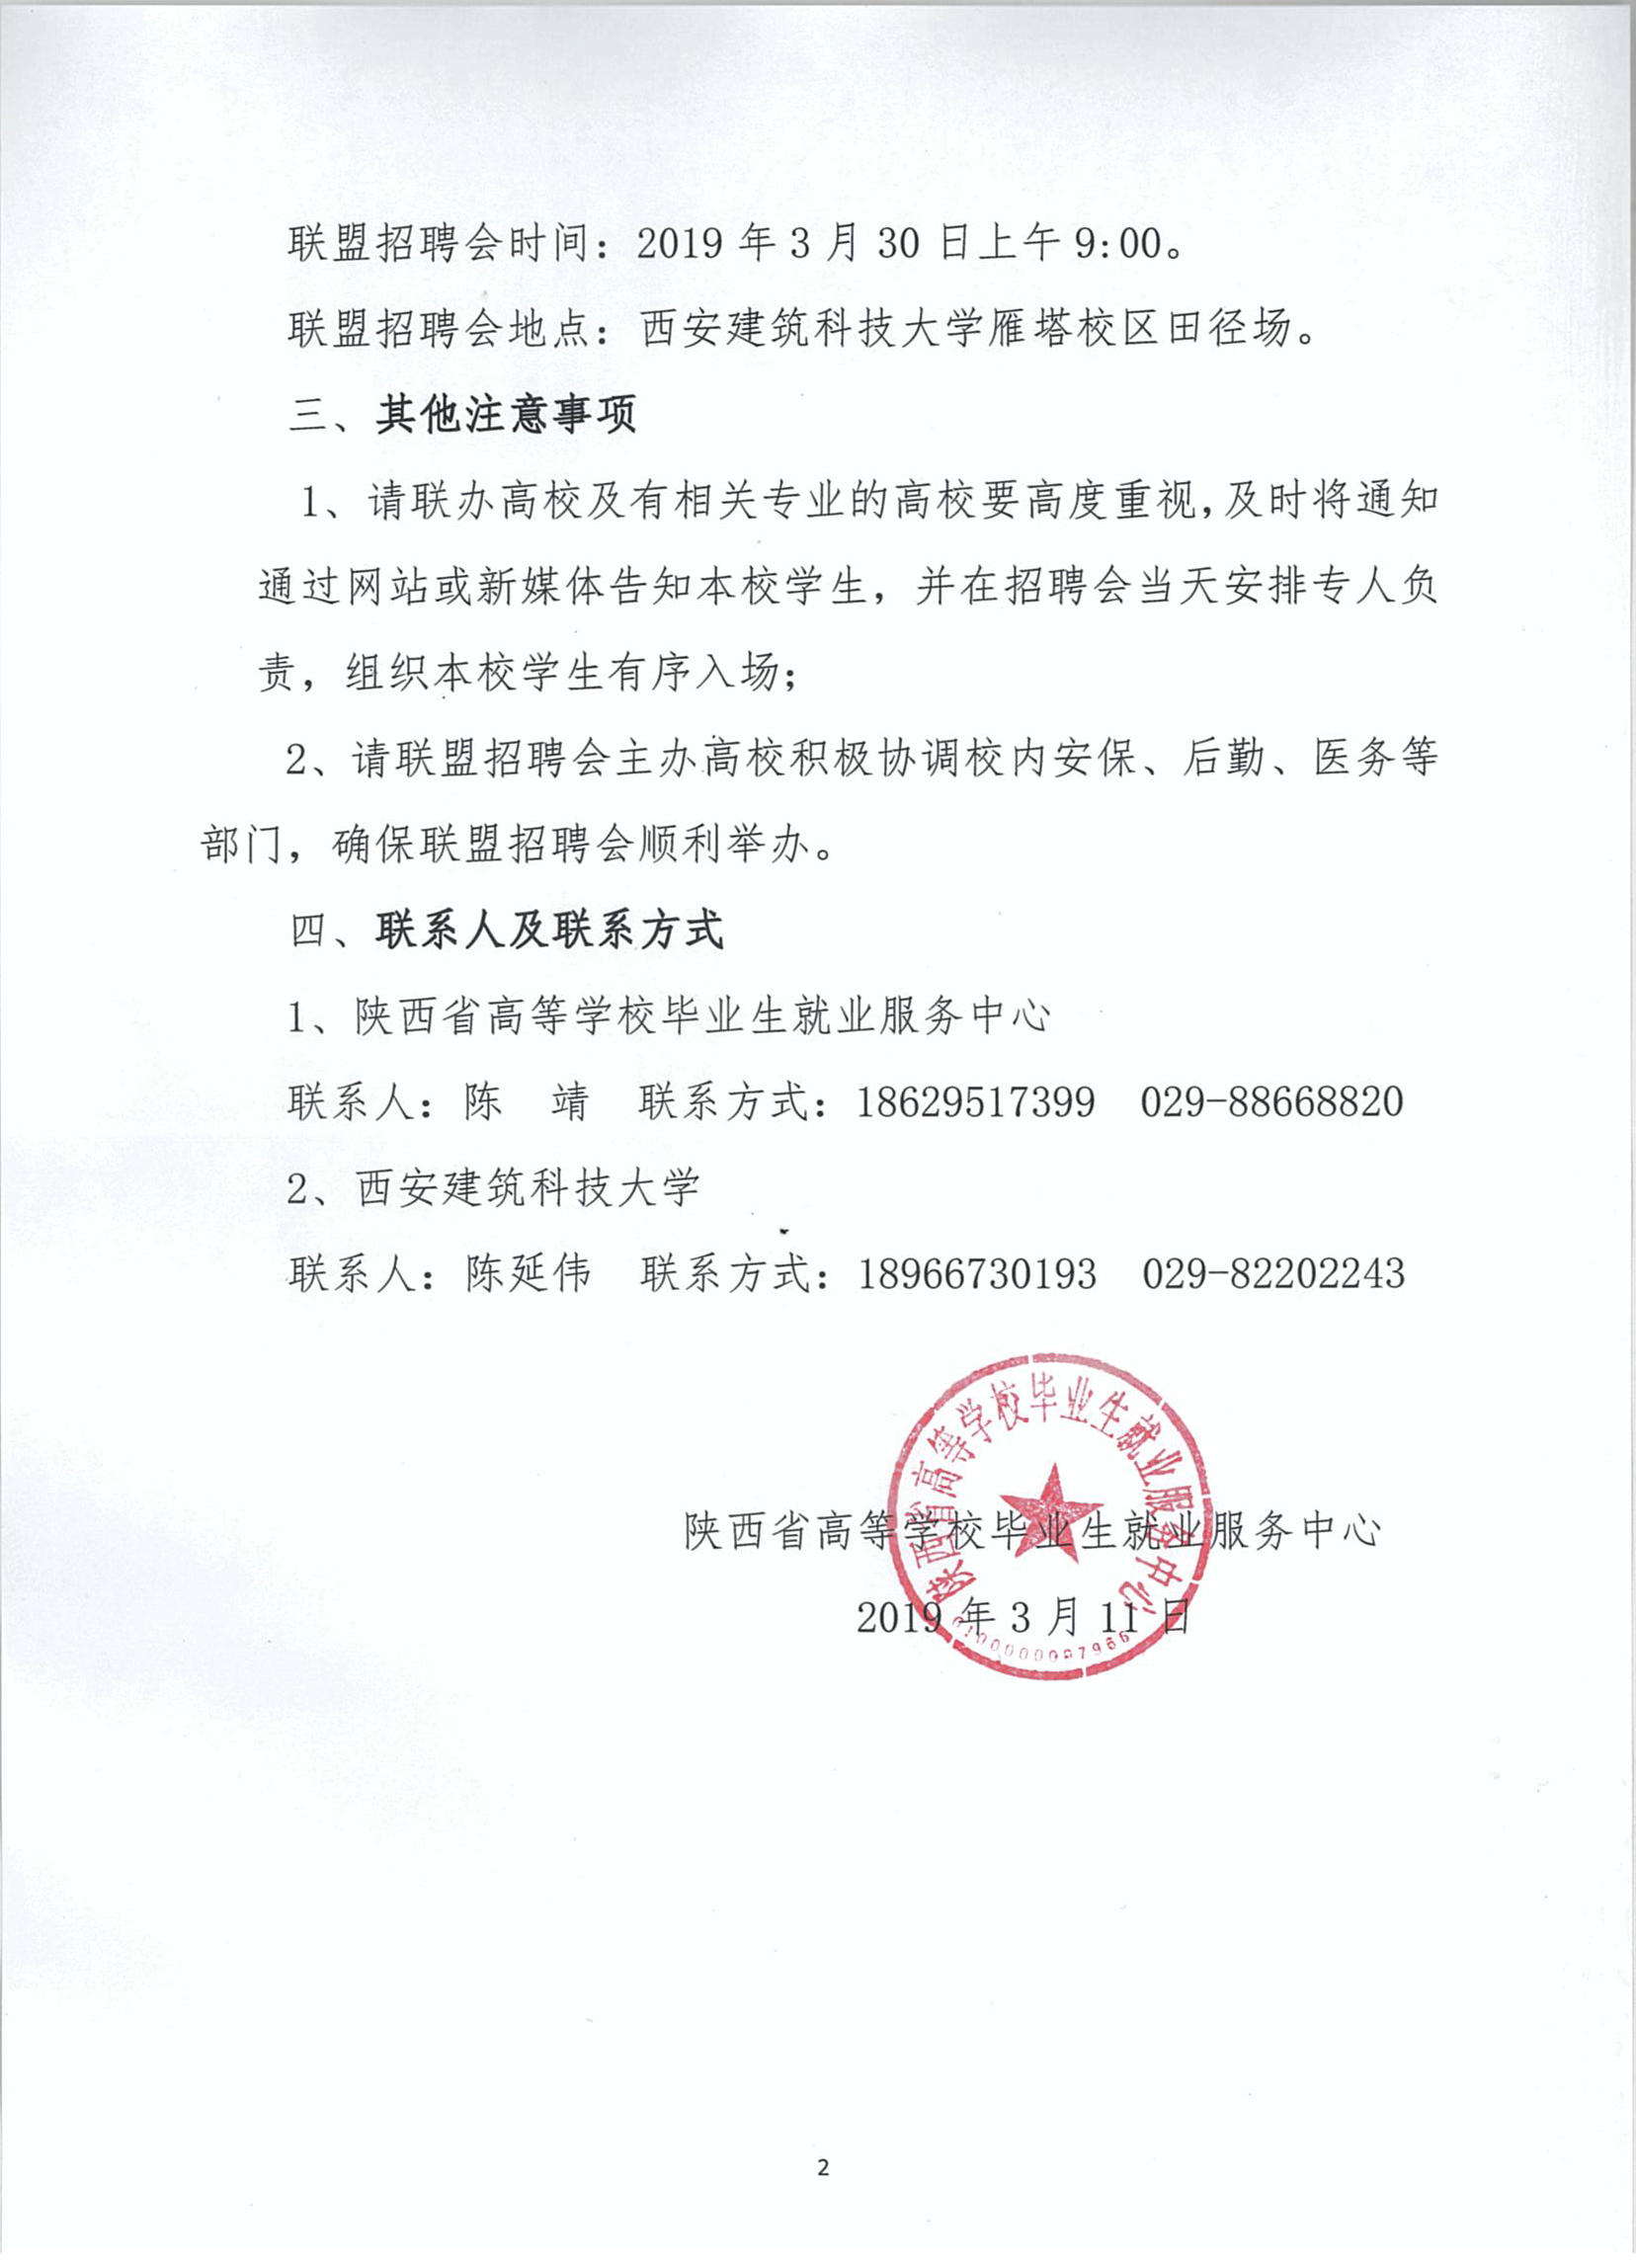 关于举办陕西省建筑综合类联盟招聘会的通知2.jpg